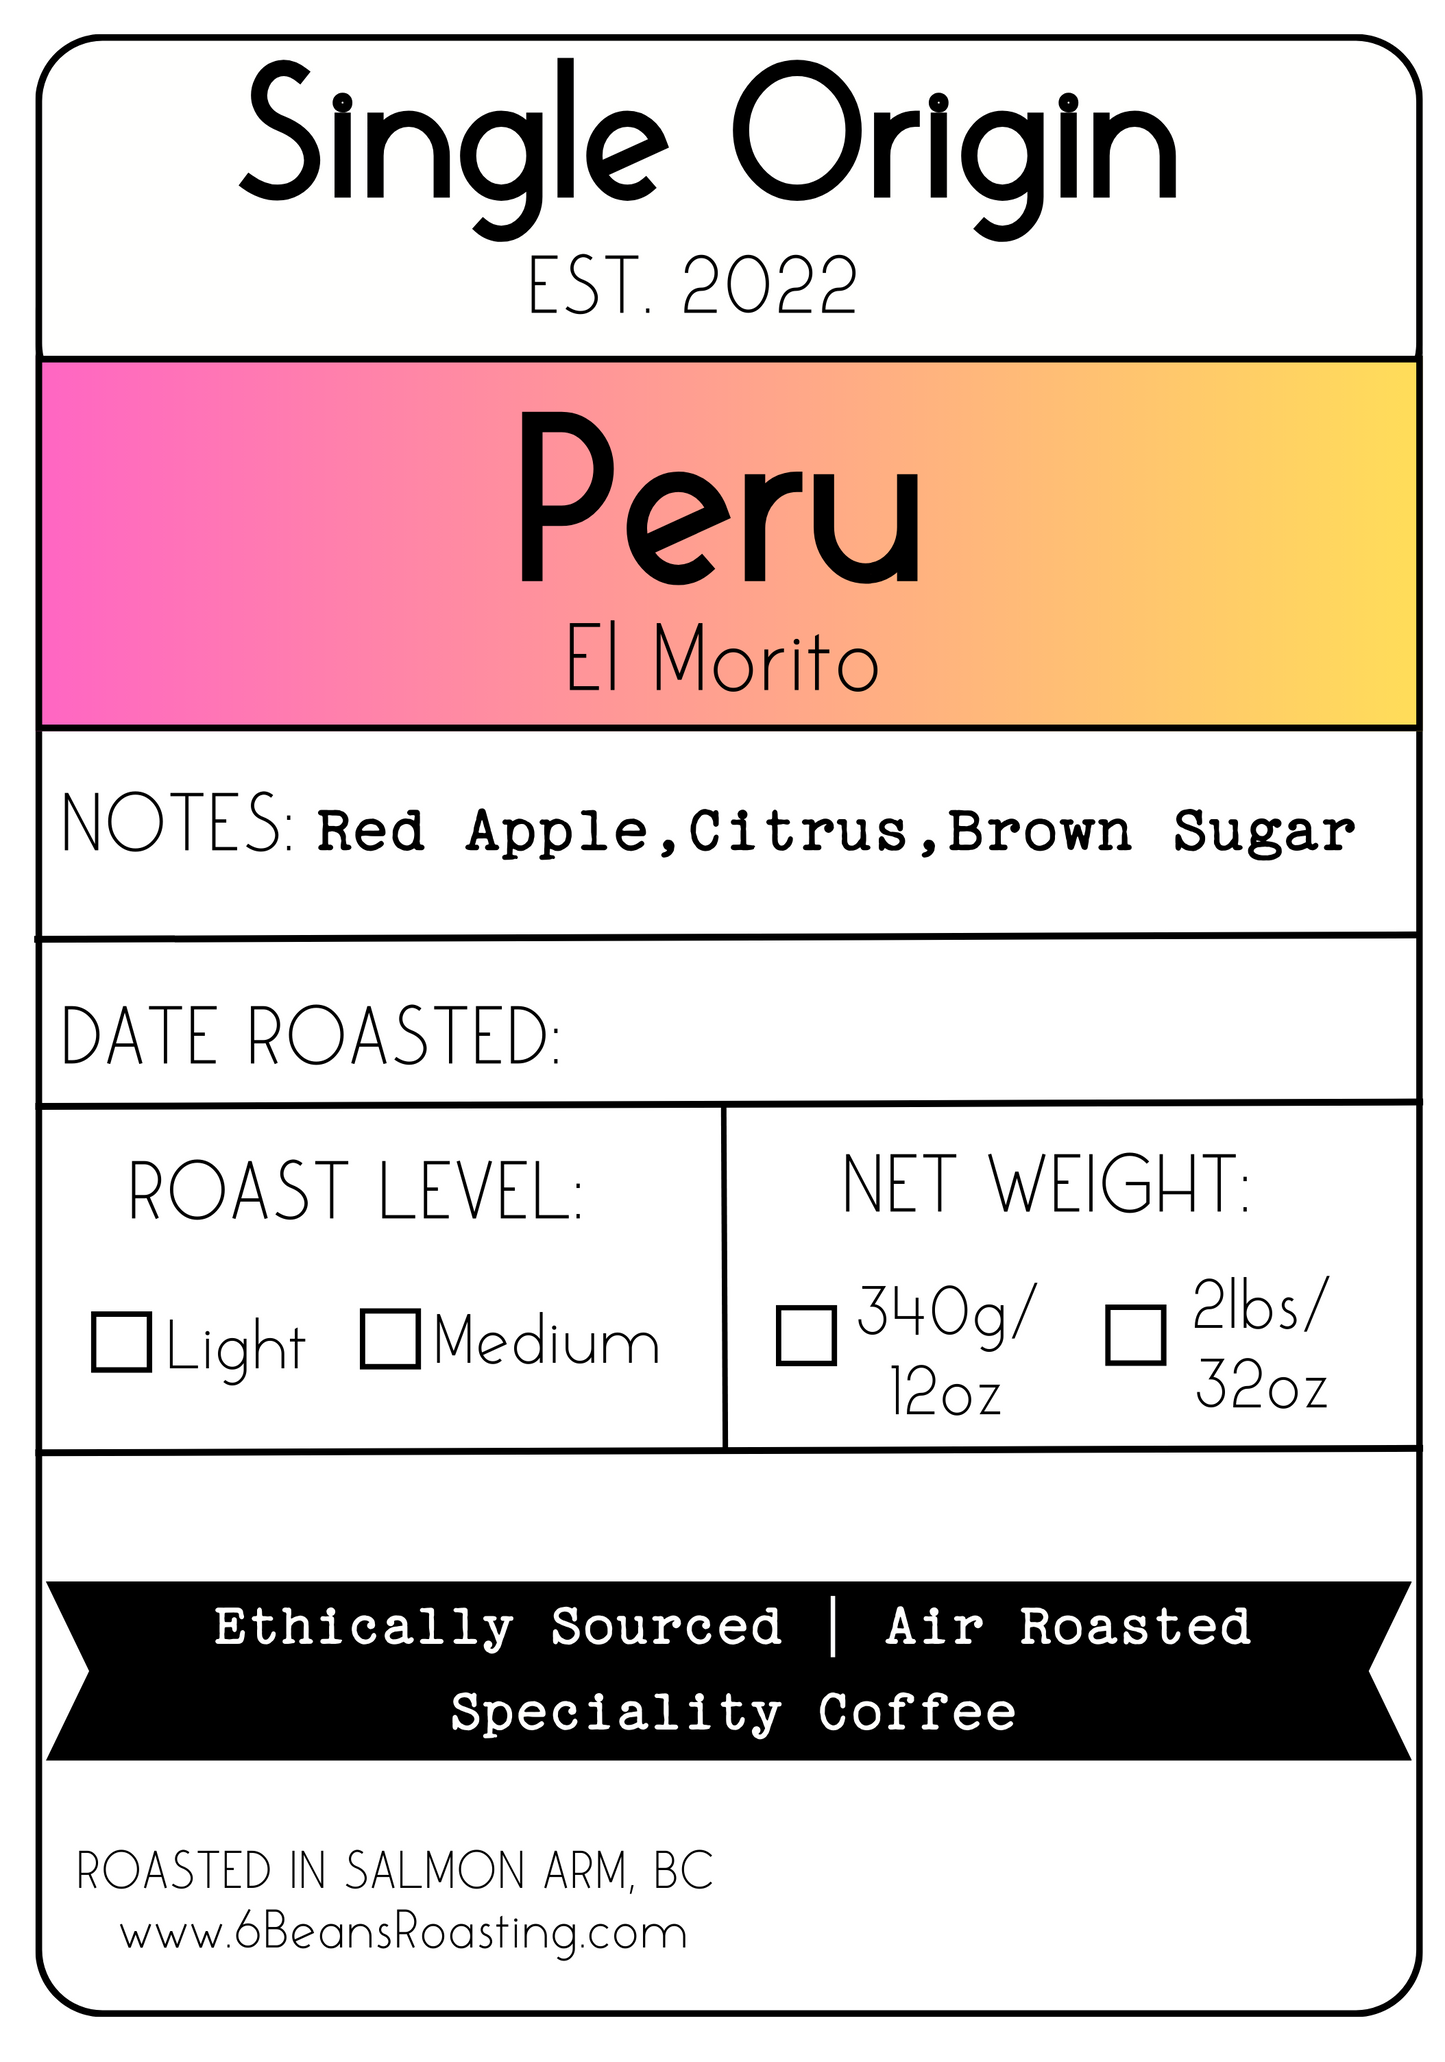 Peru - El Morito